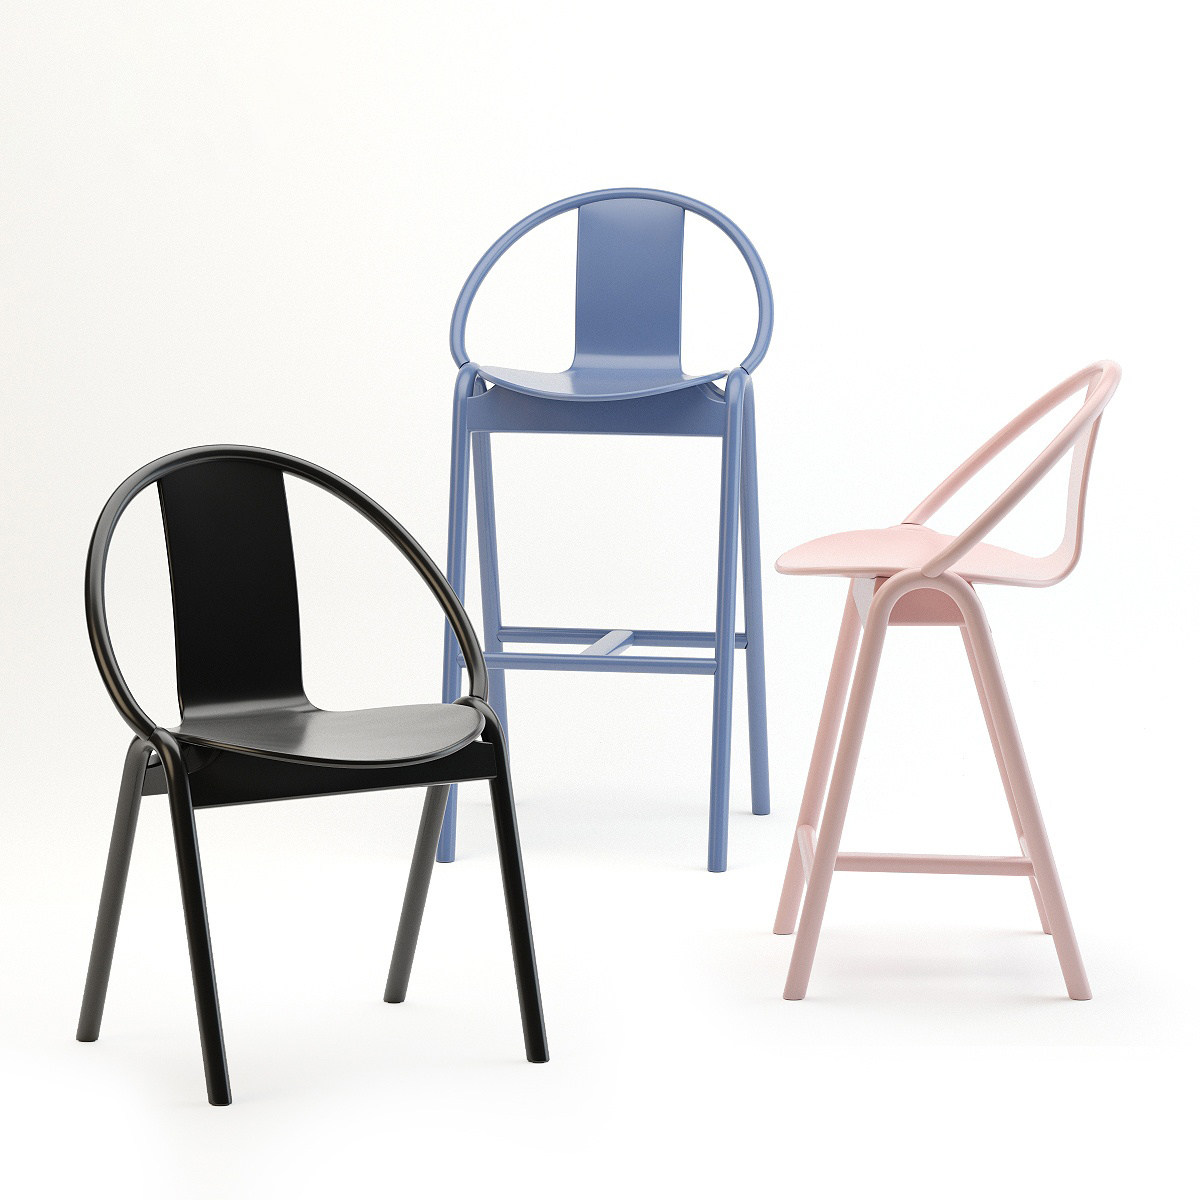 24现代简约北欧单椅吧椅组合,高脚椅,椅子,餐椅3d模型下载